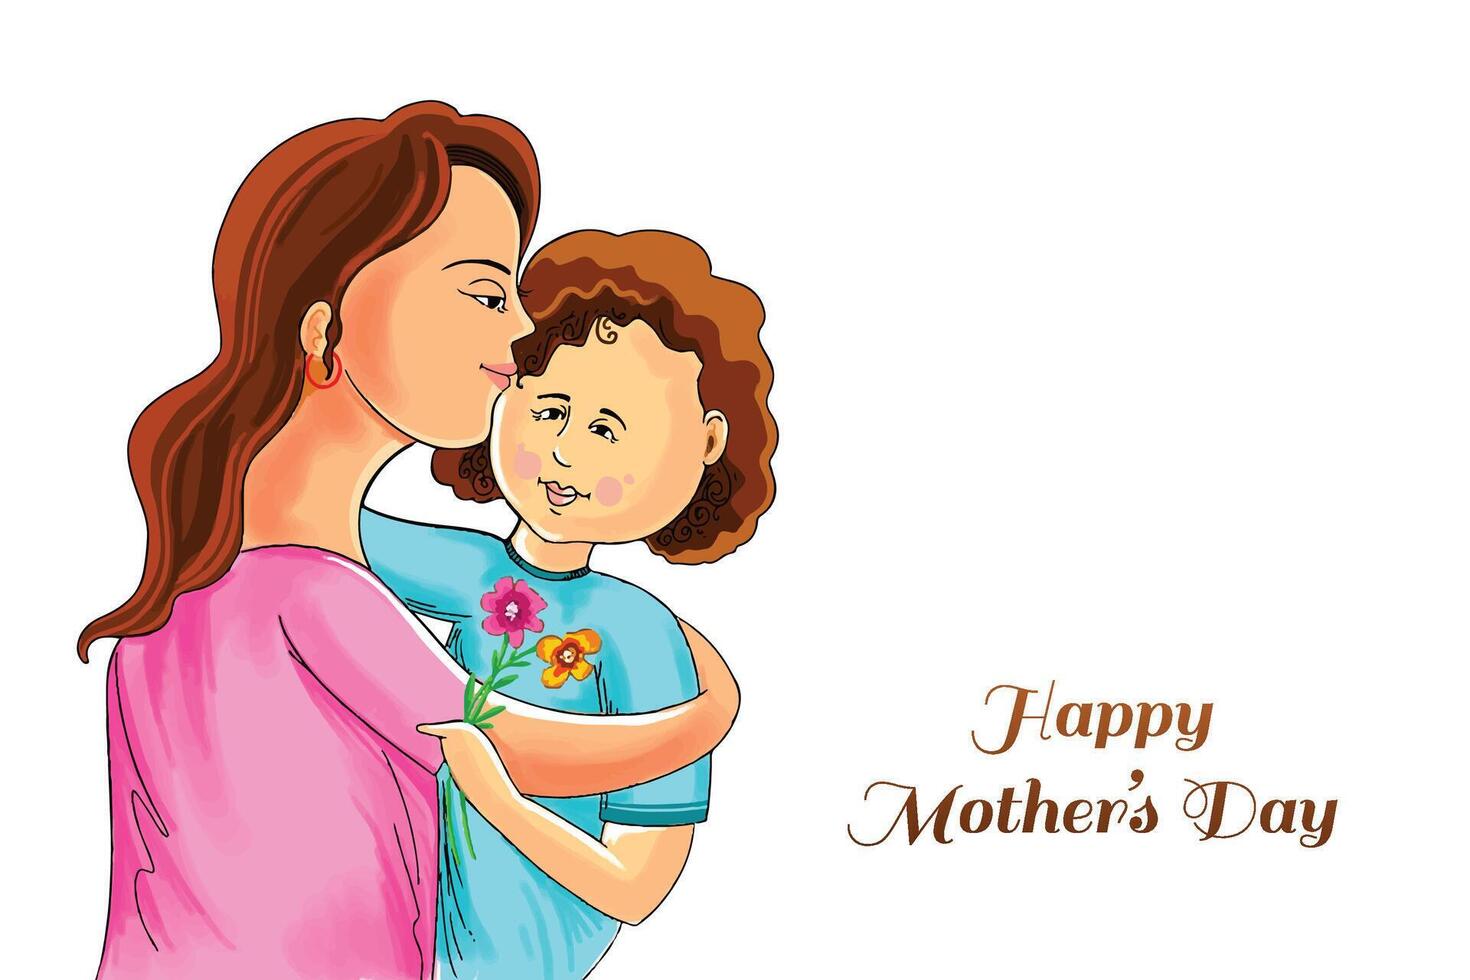 schön Mütter Tag zum Frau und Kind Liebe Karte Design vektor